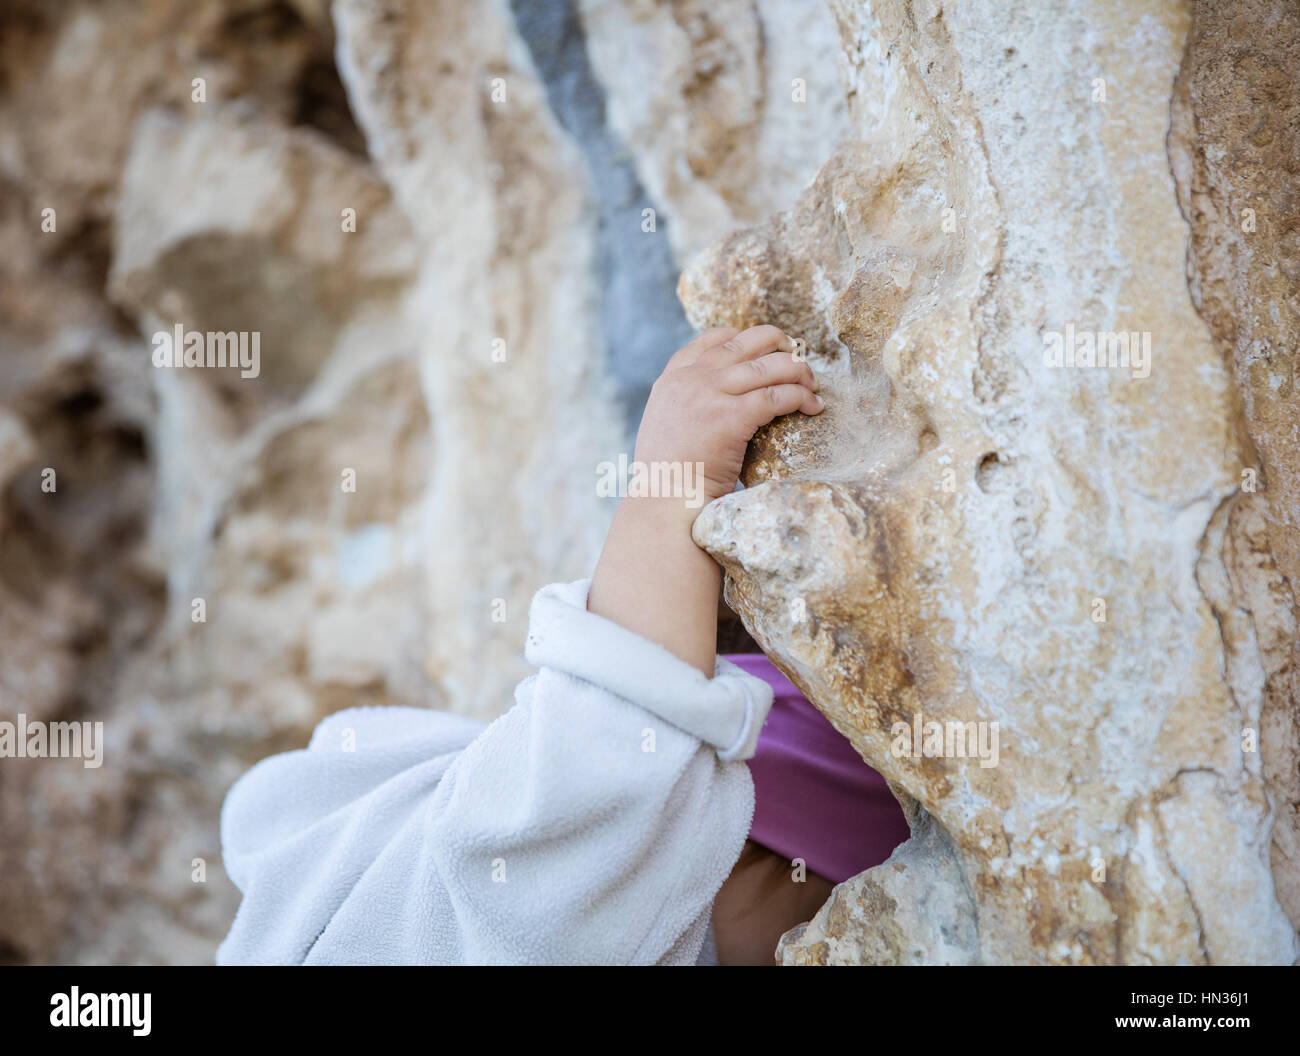 Nahaufnahme von kleinen Mädchen packende Felsen klettern Branche hand im Fokus Stockfoto